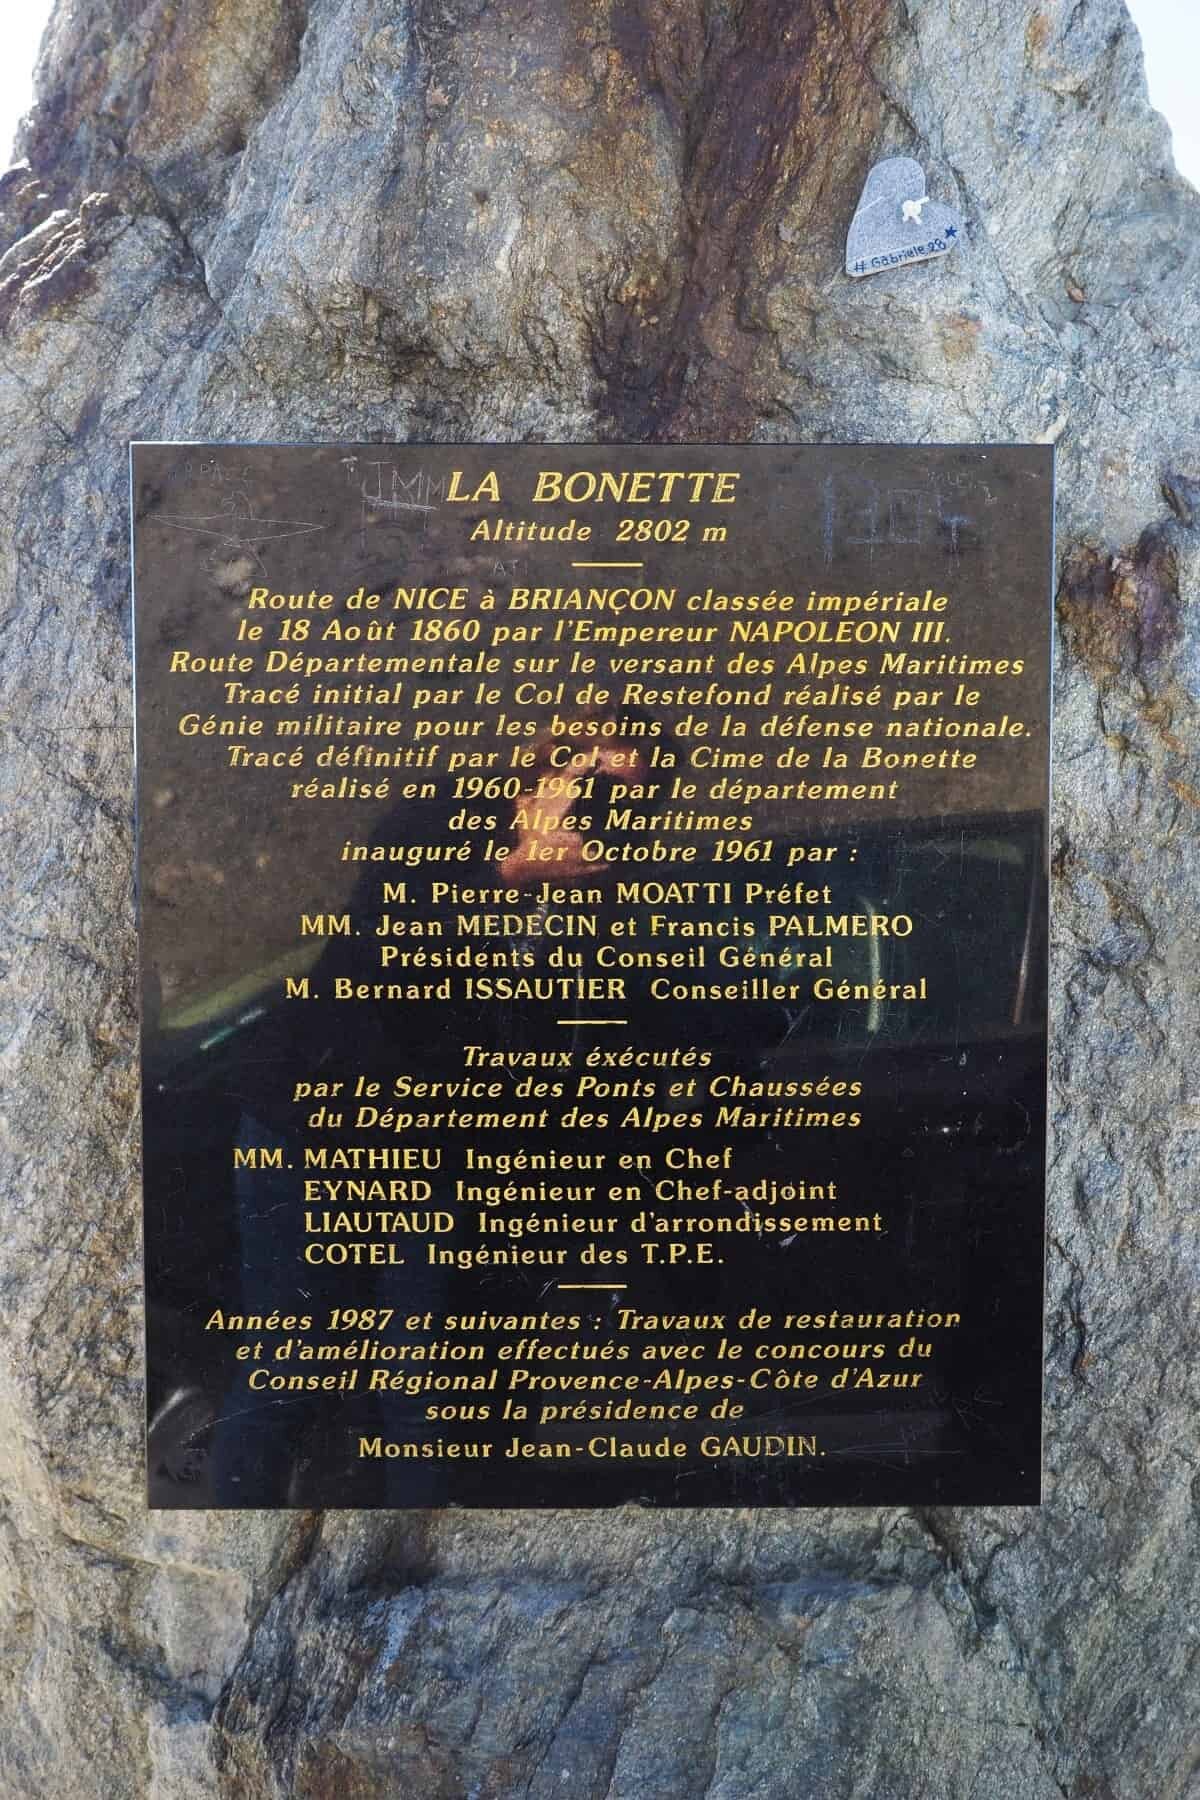 Col de la Bonette, France, the highest road in France.